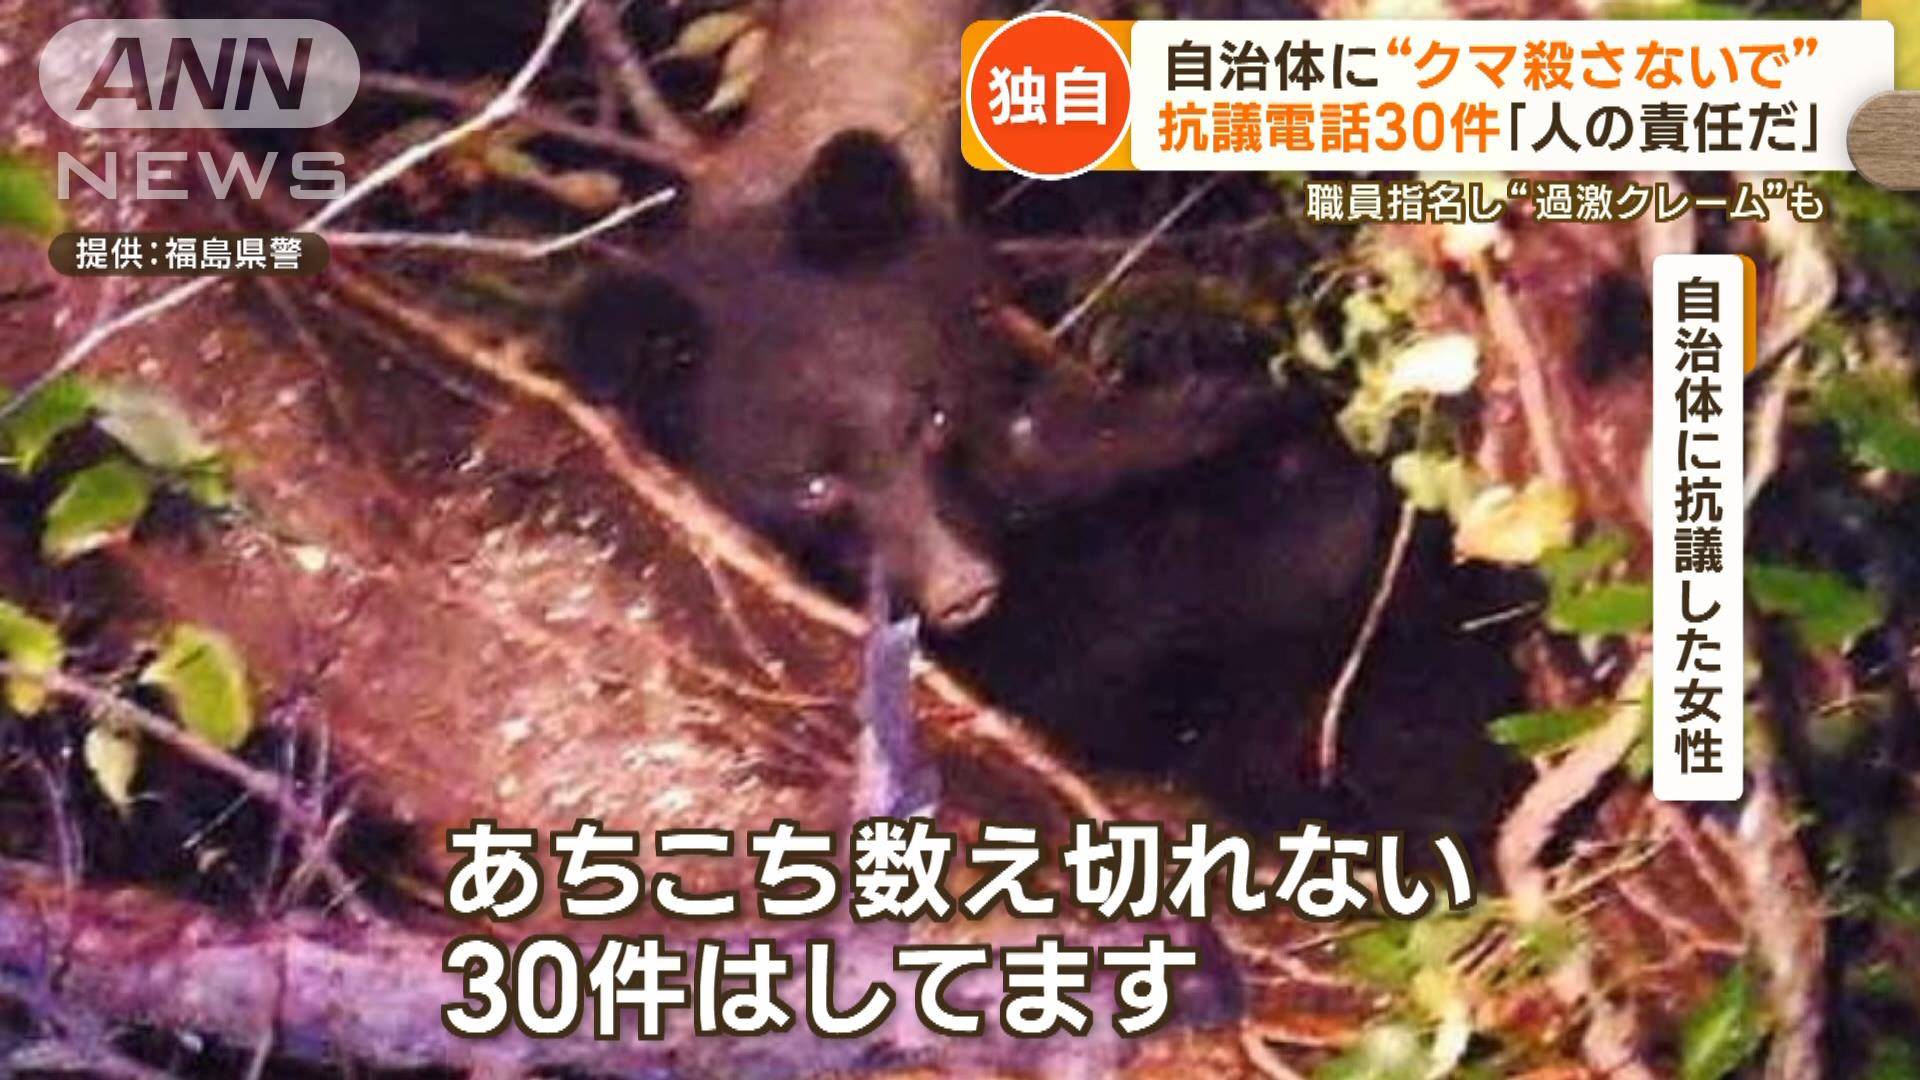 https://news.tv-asahi.co.jp/articles_img/900000736_1920.jpg